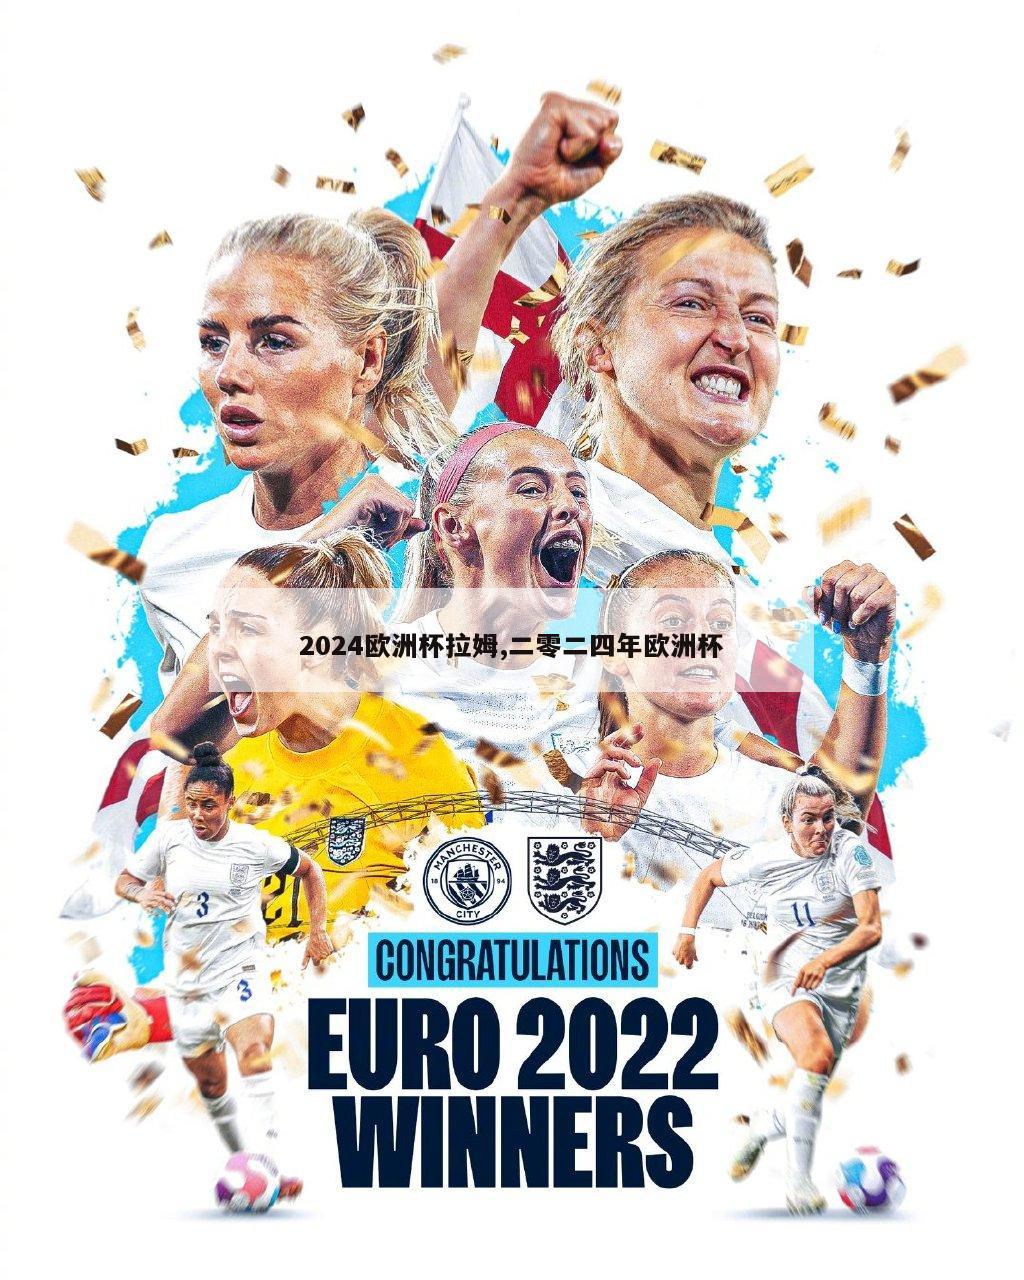 2024欧洲杯拉姆,二零二四年欧洲杯